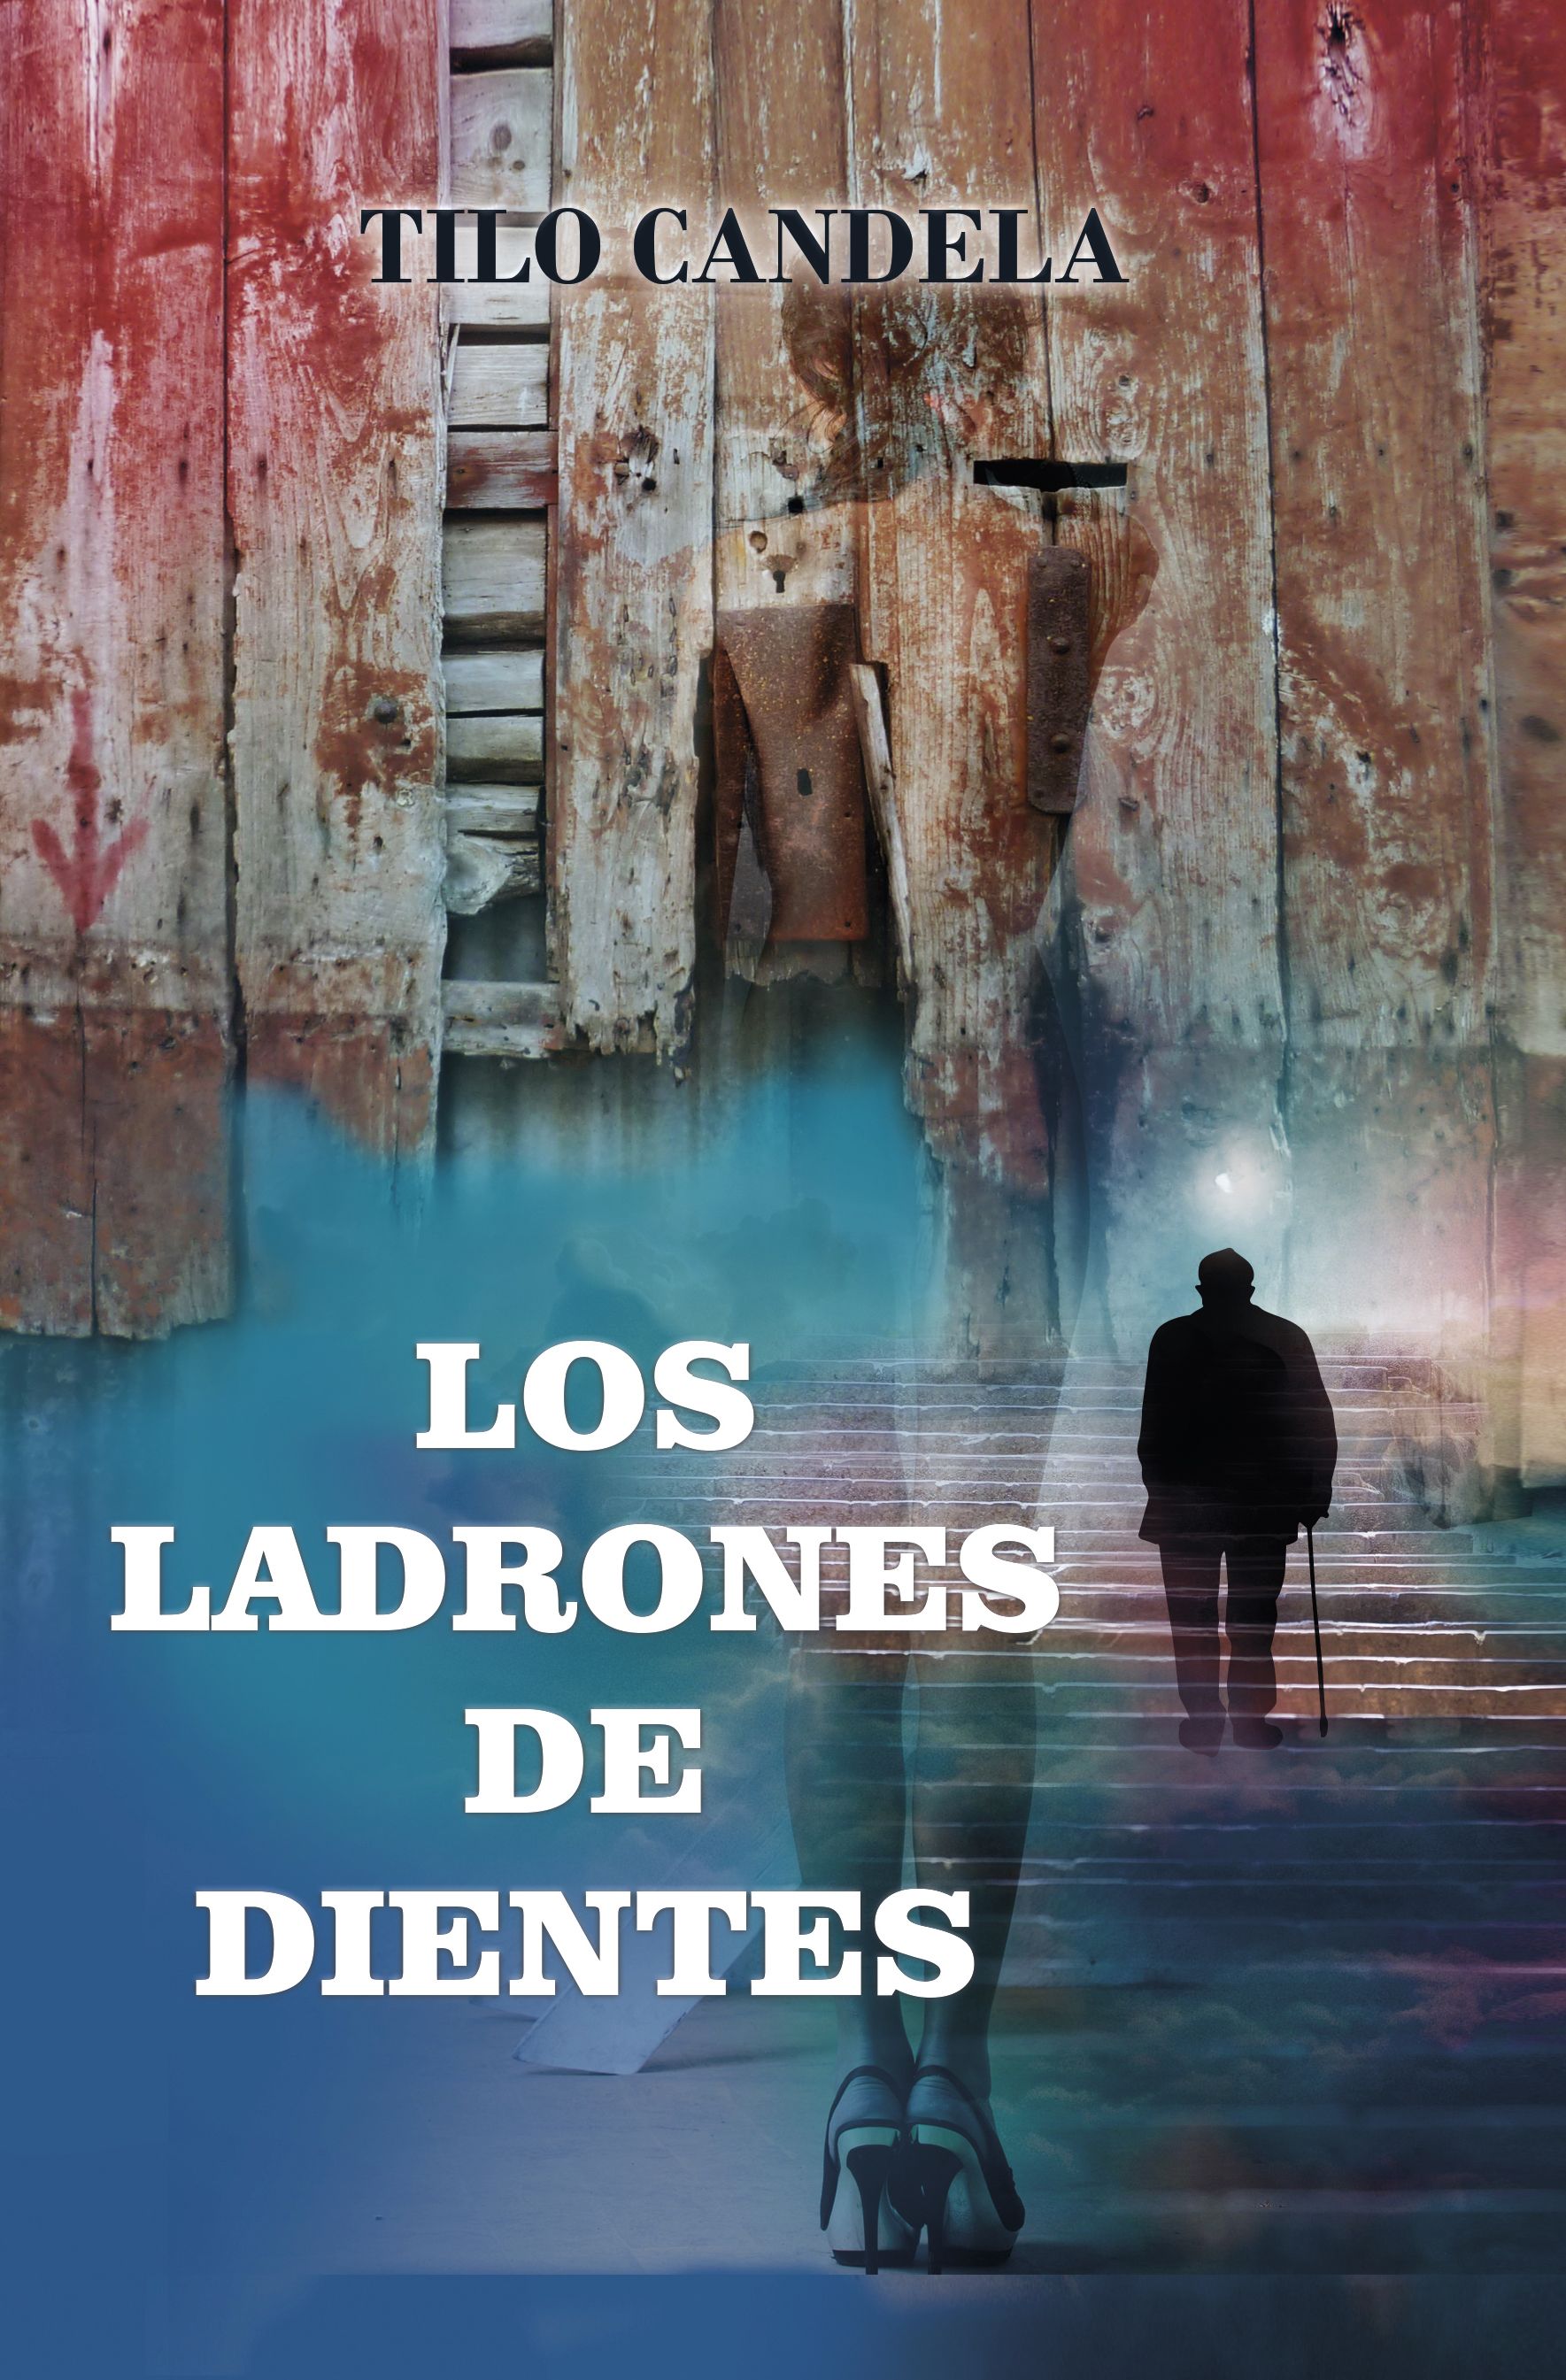 Ternura y espanto conviven en 'Los ladrones de dientes', la primera novela de misterio del escritor Tilo Candela